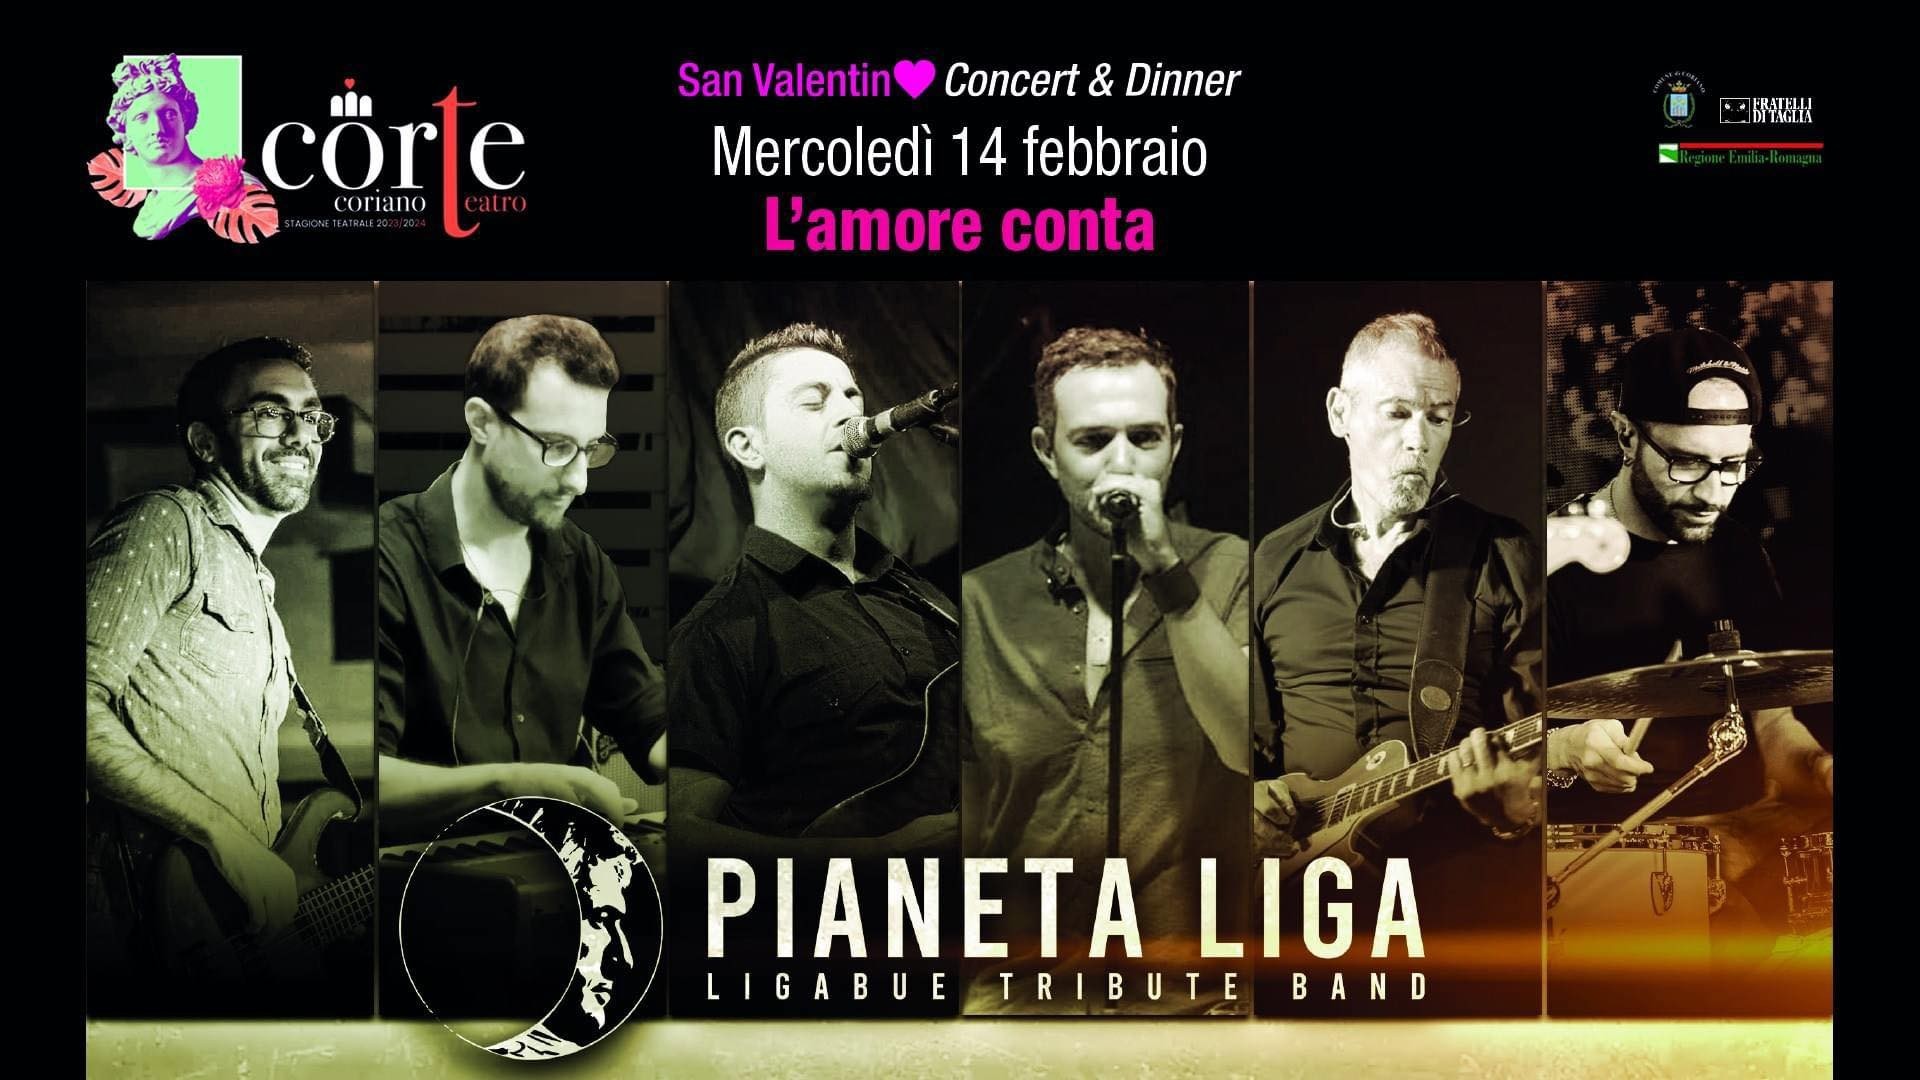 "L'amore conta" San Valentino Concert & dinner - Pianeta Liga (Ligabue Tribute Band) @ Teatro CorTe Coriano